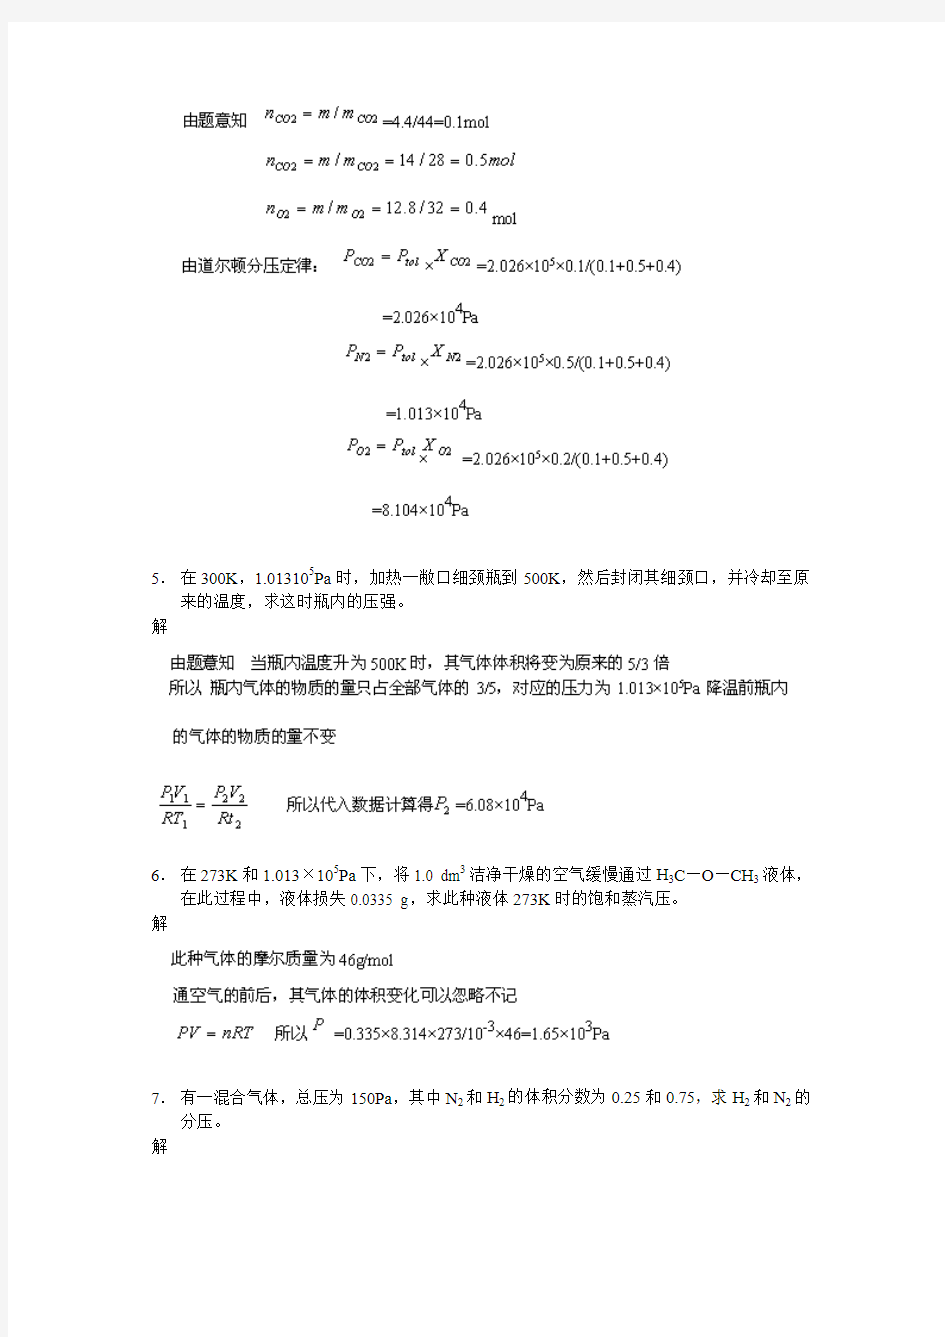 武大吉大第三版无机化学教材课后习题答案02-11